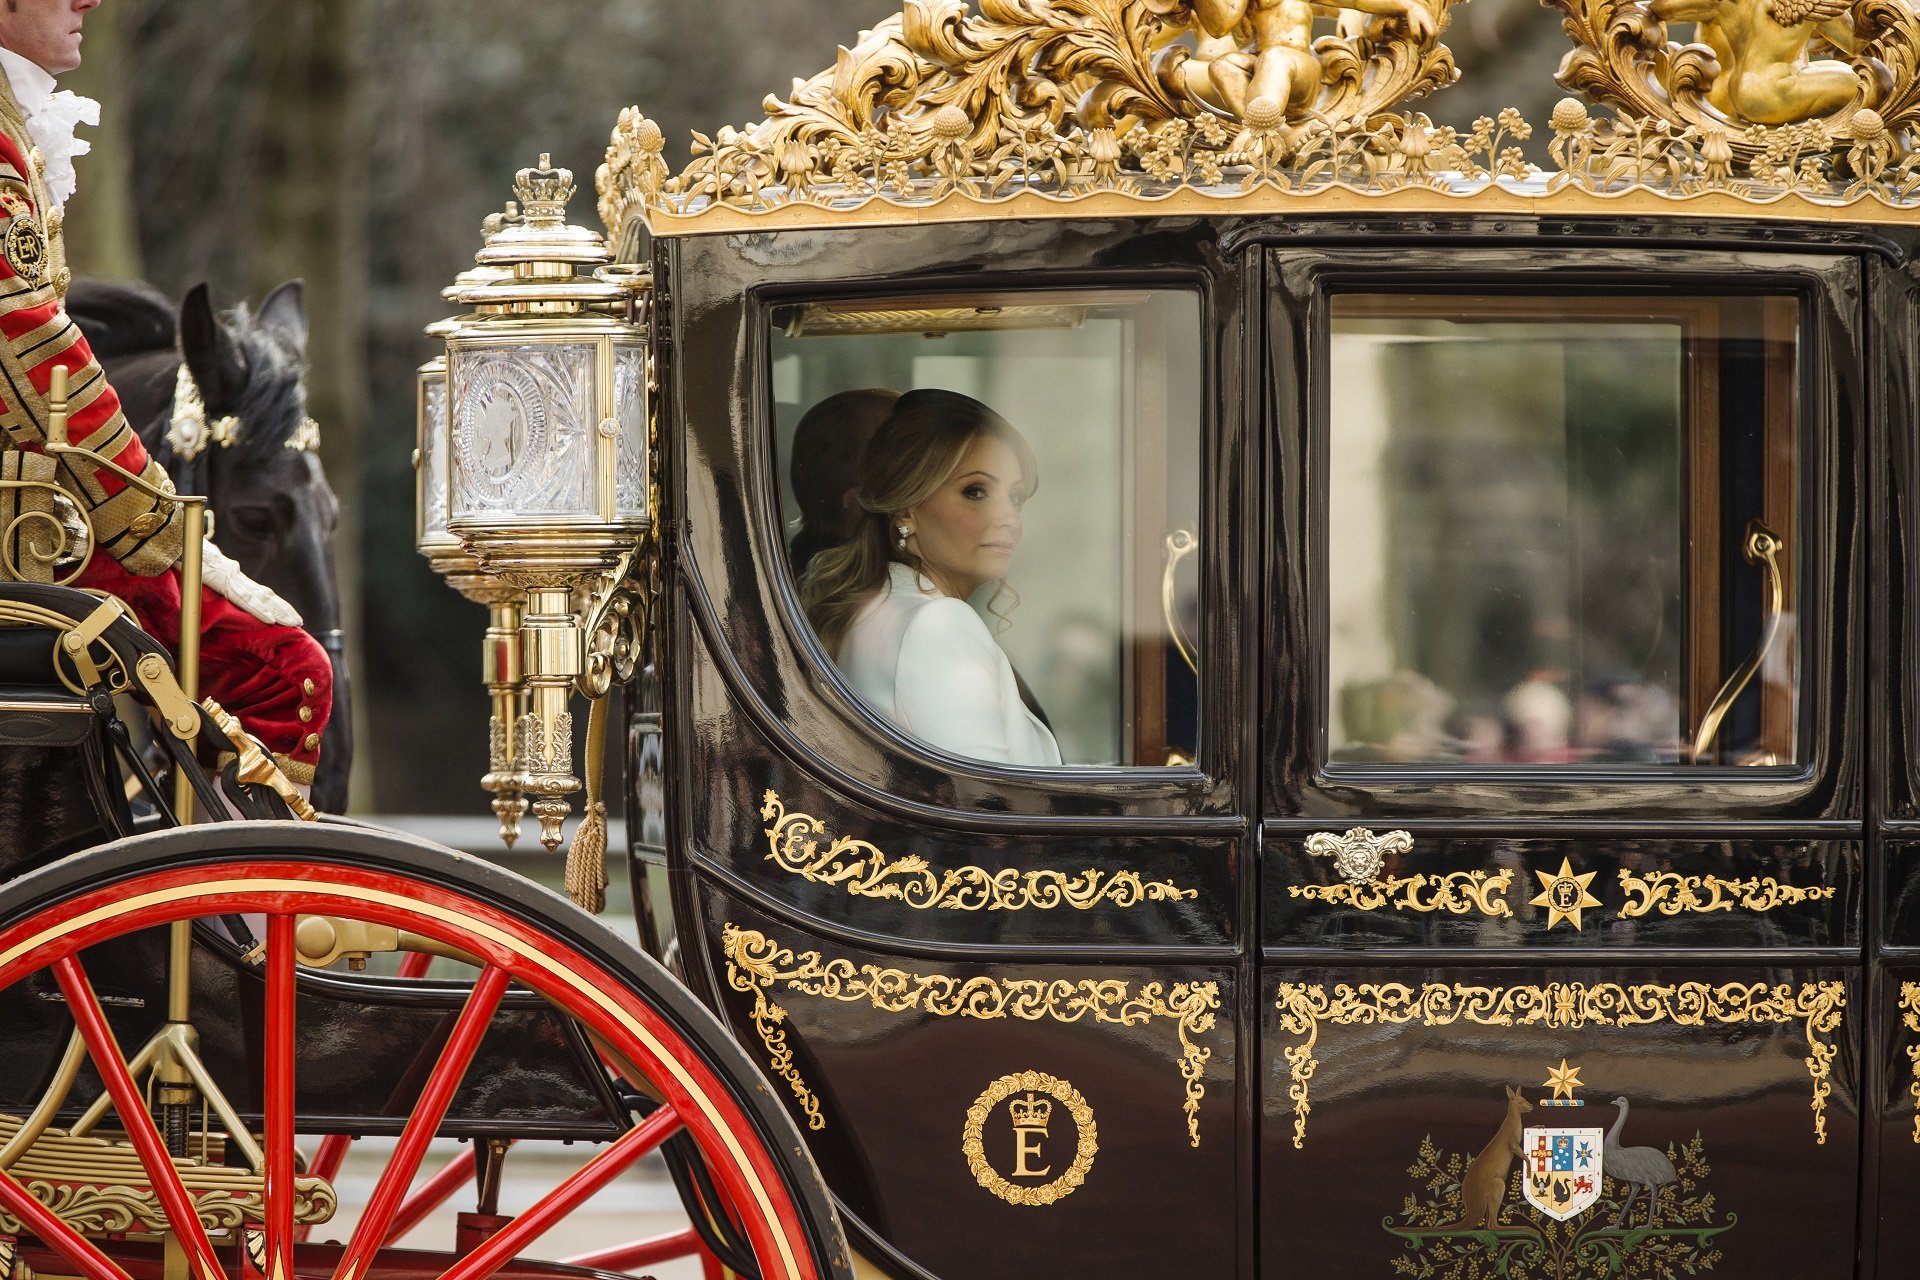 Angélica Rivera en carroza estatal camino al Palacio de Buckingham tras bienvenida ceremonial con la Reina de Inglaterra en marzo de 2015 || Fuente: Getty Images